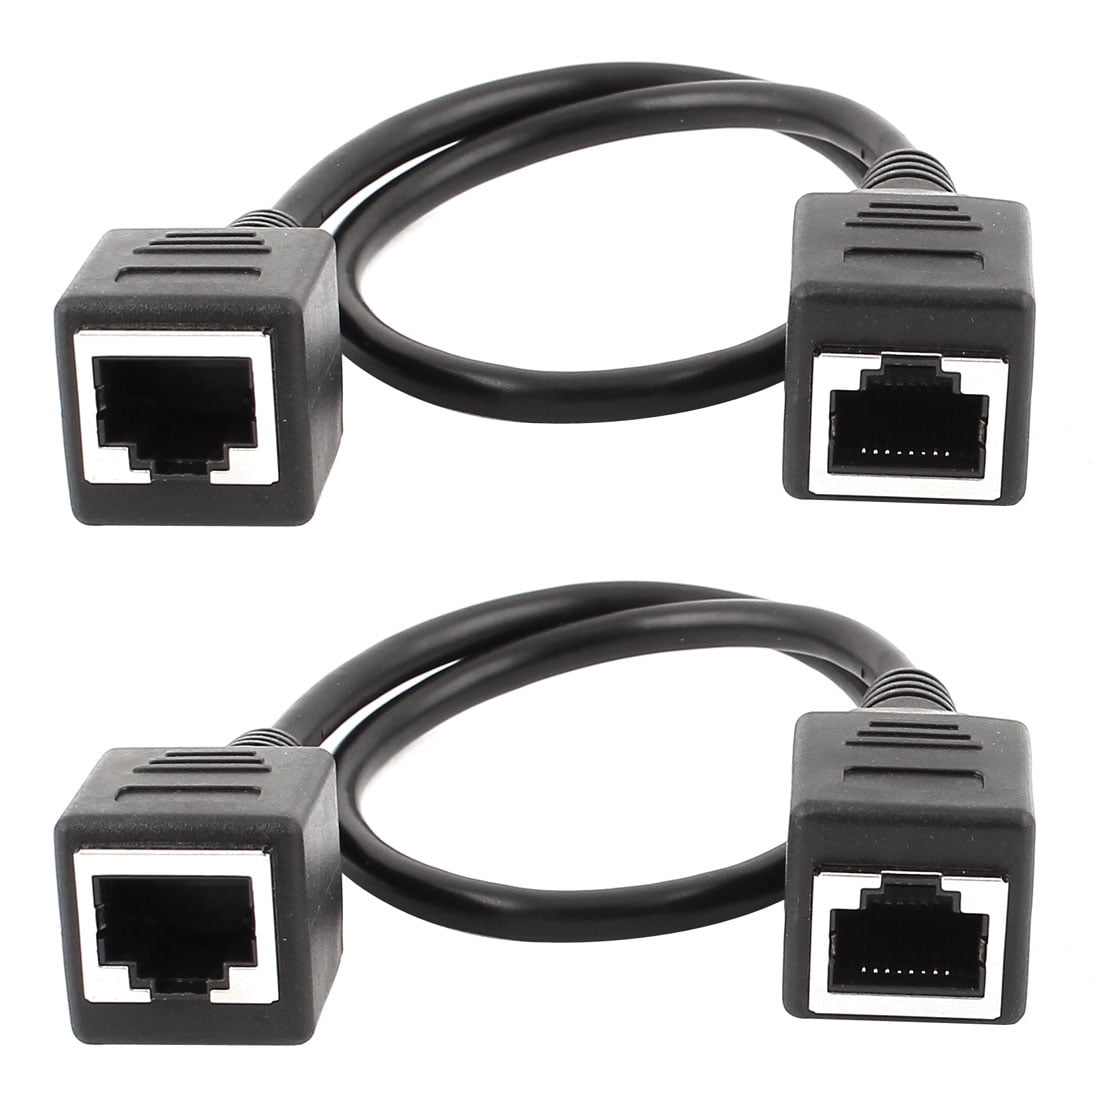 hudiemm0B Network Extension Cable 30cm RJ45 Male to Female Network Adapter Ethernet Extension Cable for PC Laptop